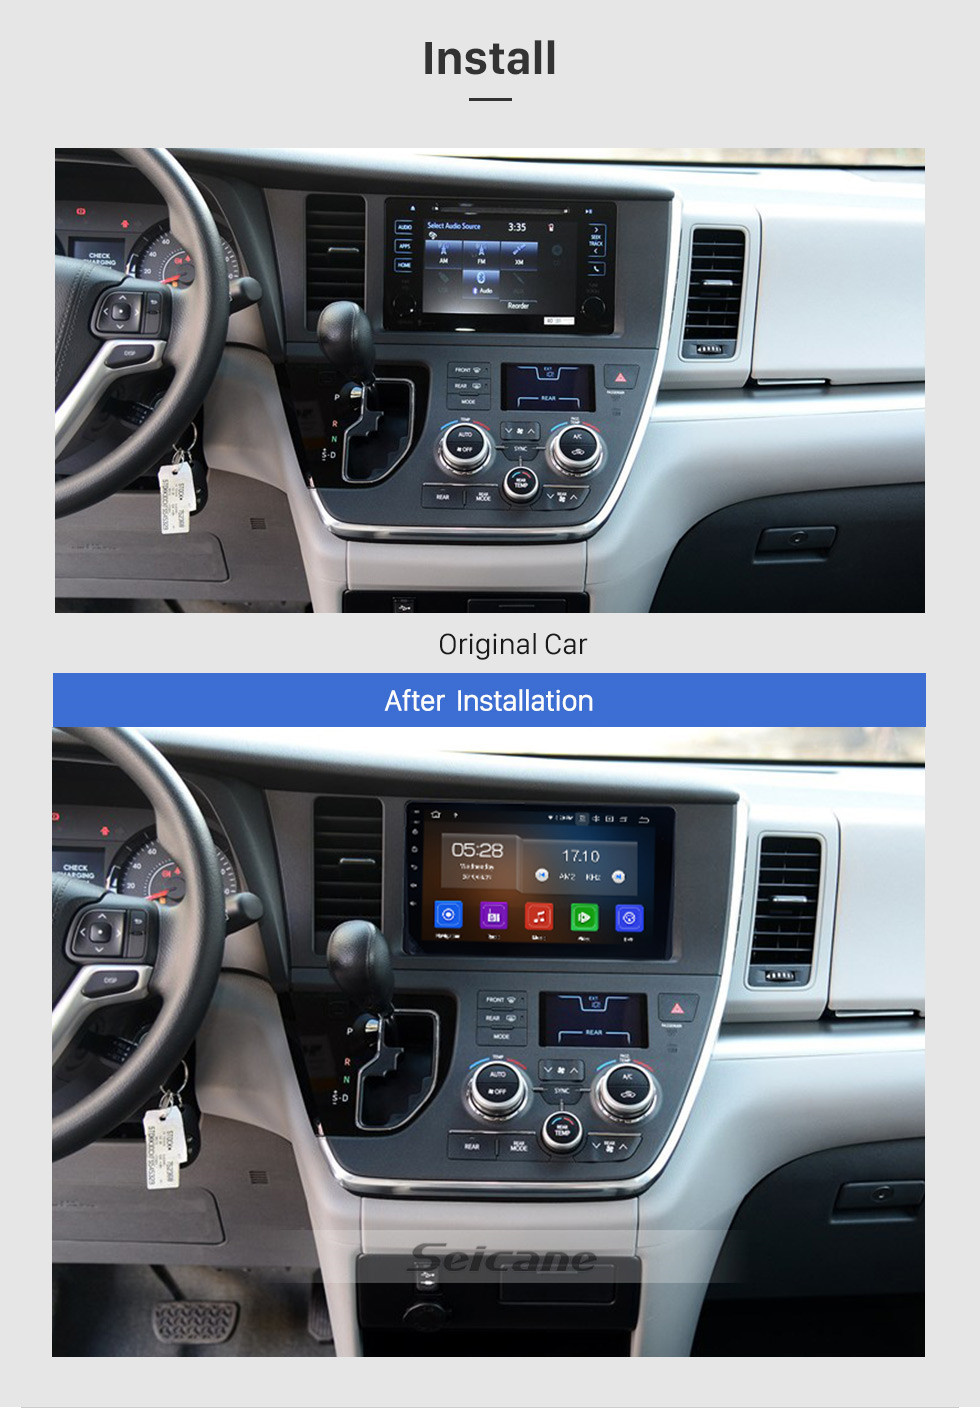 Seicane 9 pulgadas del mercado de accesorios Android 13.0 Radio GPS para 2015-2018 Toyota Sienna con pantalla táctil capacitiva TPMS DVR OBD II Reposacabezas Monitor de control USB SD Bluetooth 3G WiFi Video AUX Cámara trasera